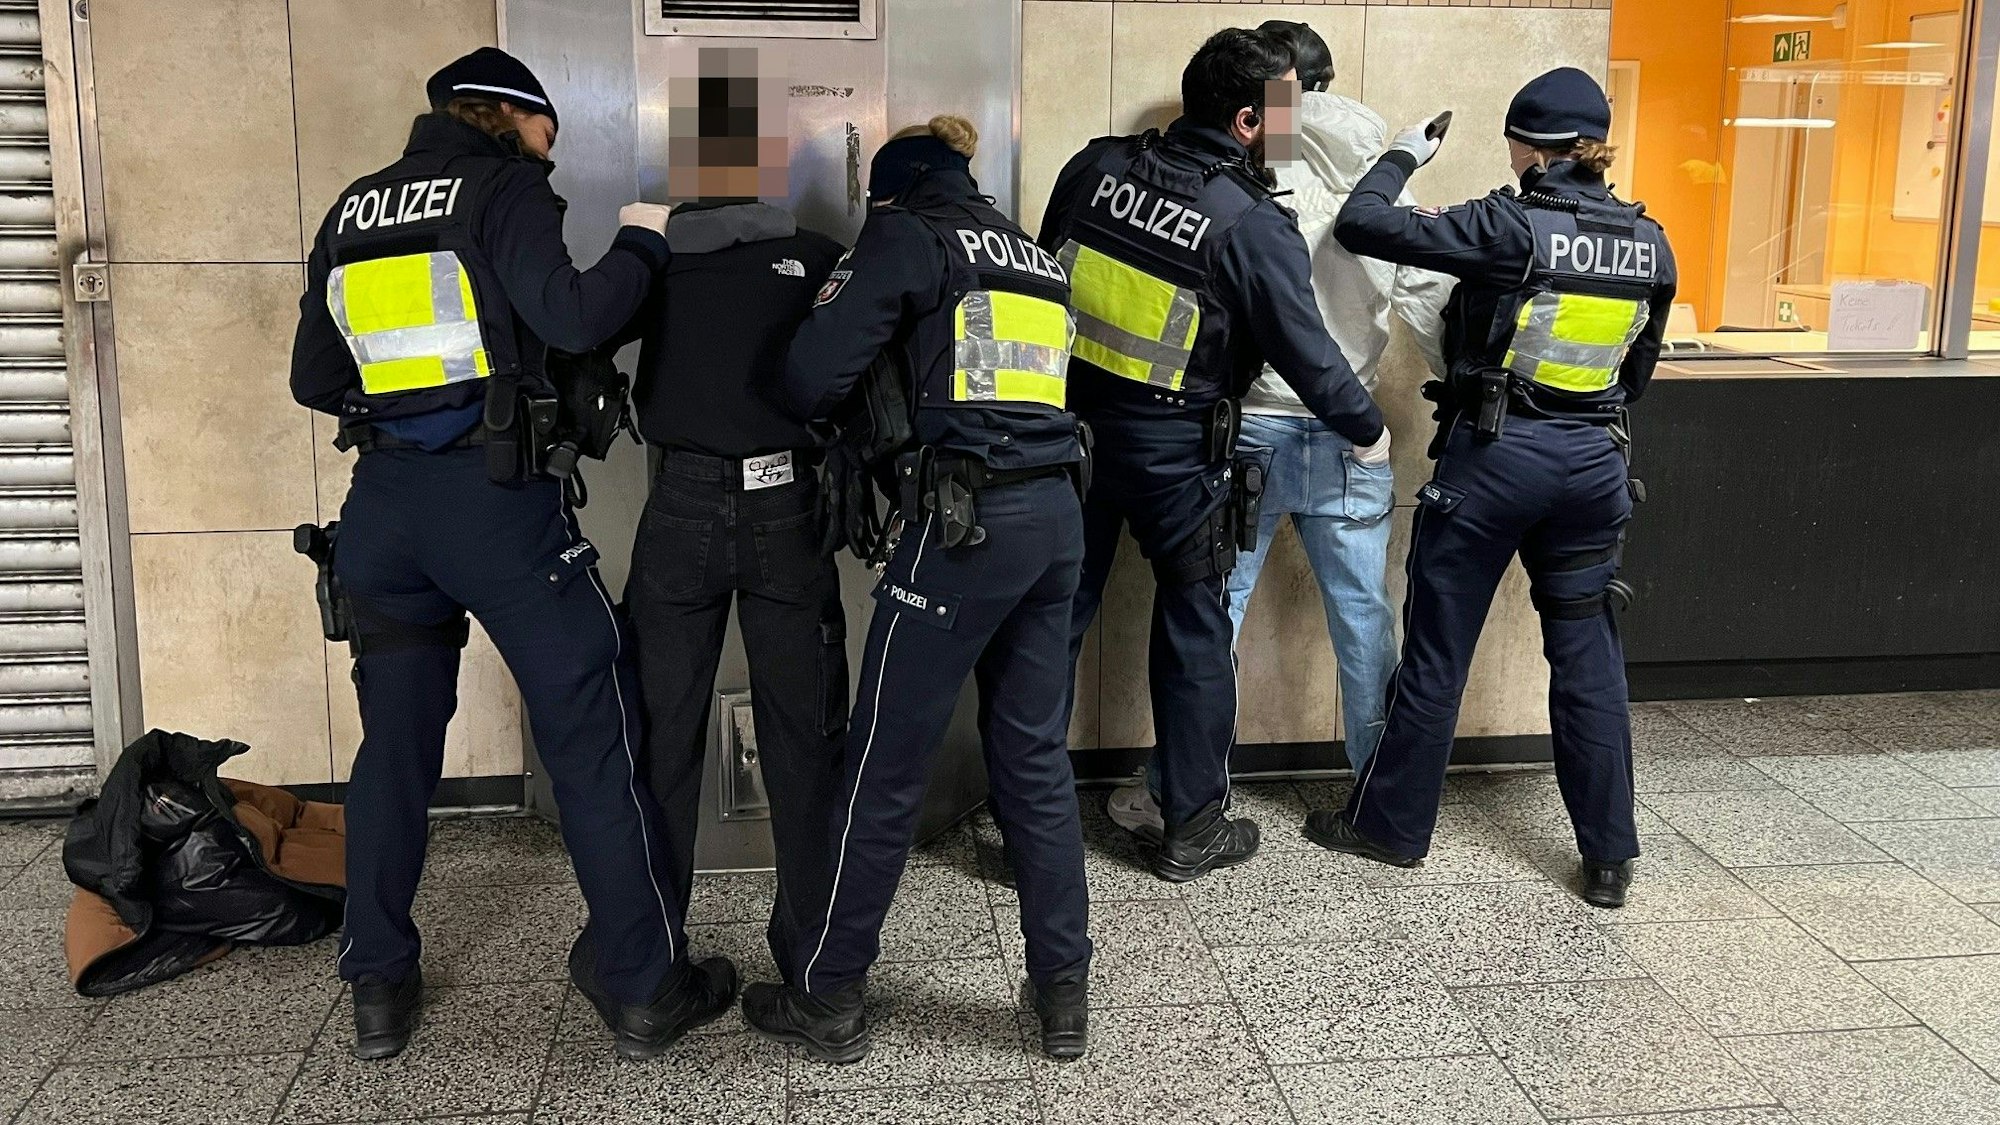 Polizisten durchsuchen mutmaßliche Drogendealer am Ebertplatz